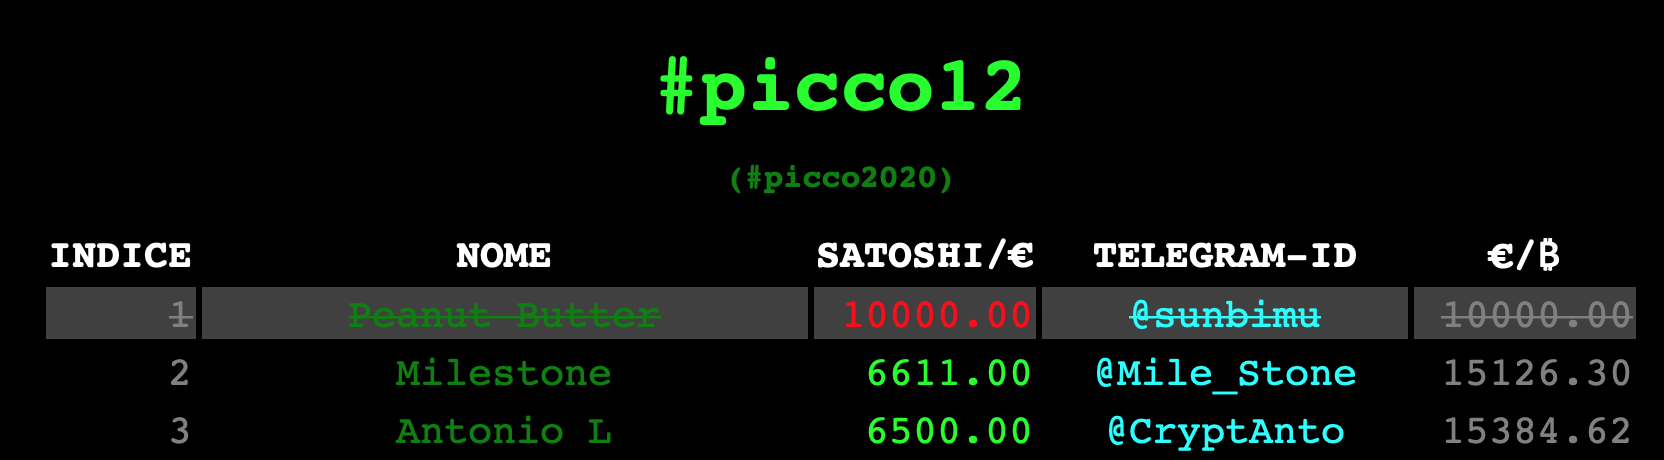 picco12-esempio-9999.png